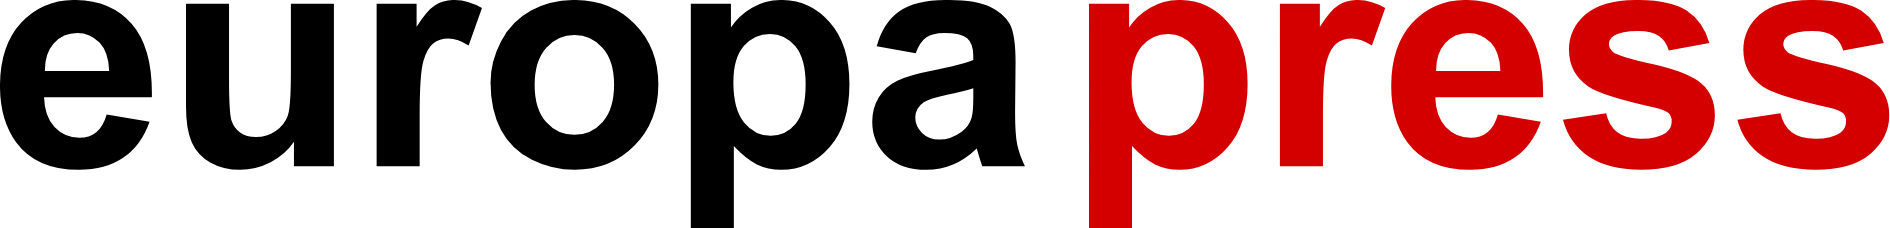 Logo de Europa Press